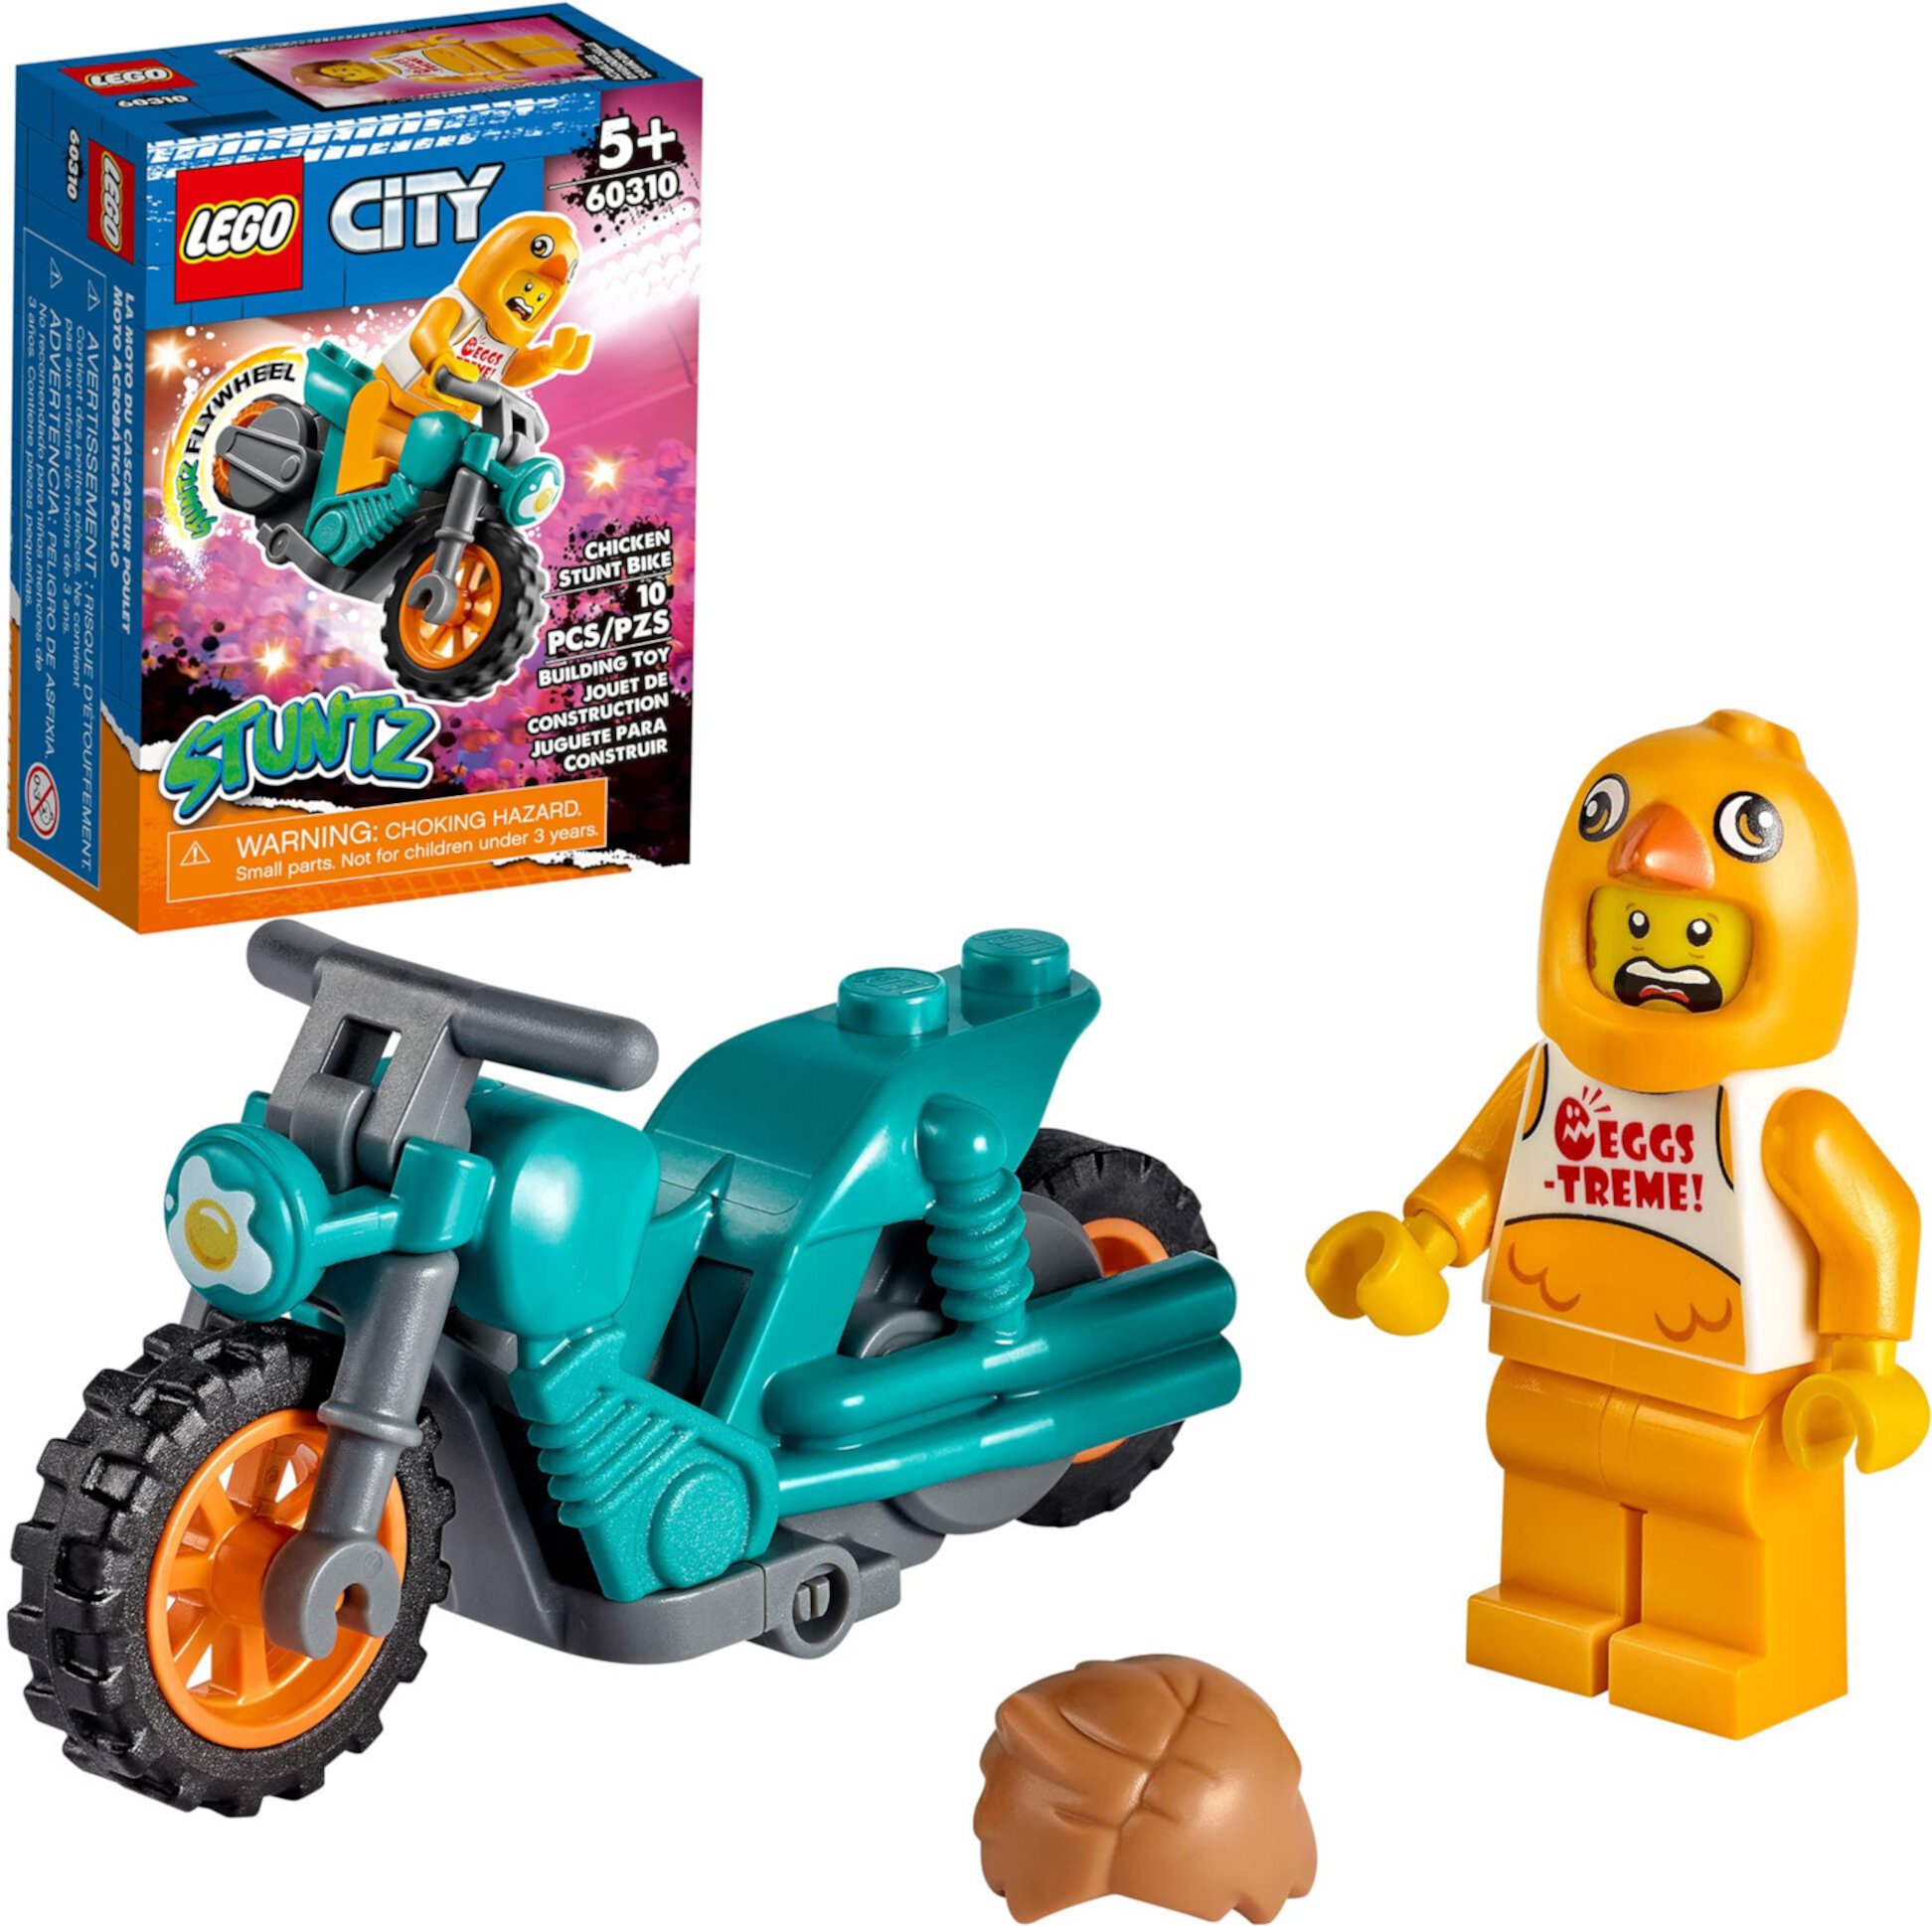 LEGO City Куриный трюковой велосипед 60310 Строительный набор; Веселая крутая игрушка для детей (10 шт.) Lego